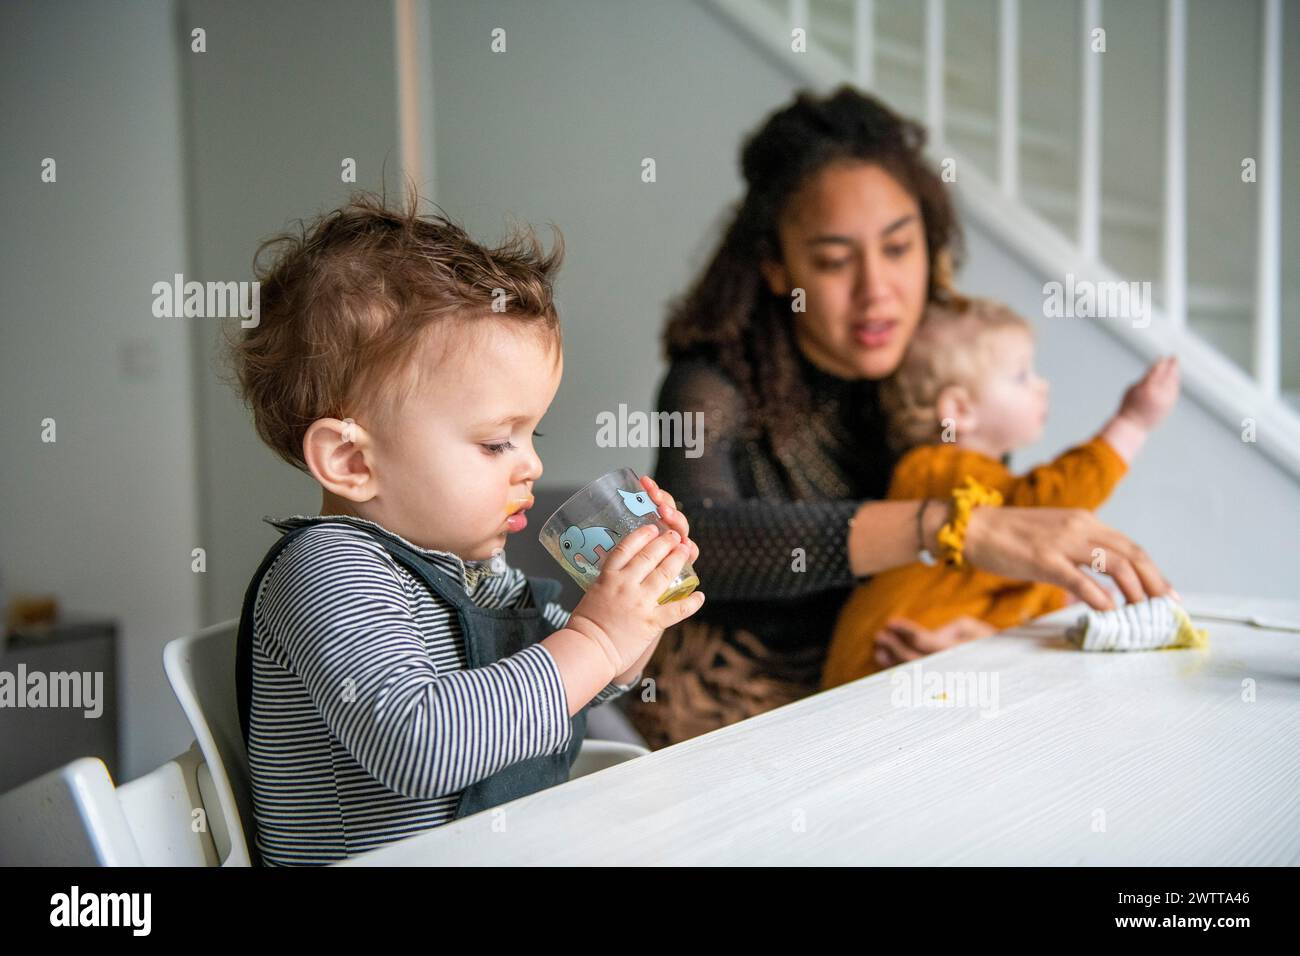 El niño pequeño bebe de una taza mientras una madre observa a dos niños en la mesa de la cena. Foto de stock